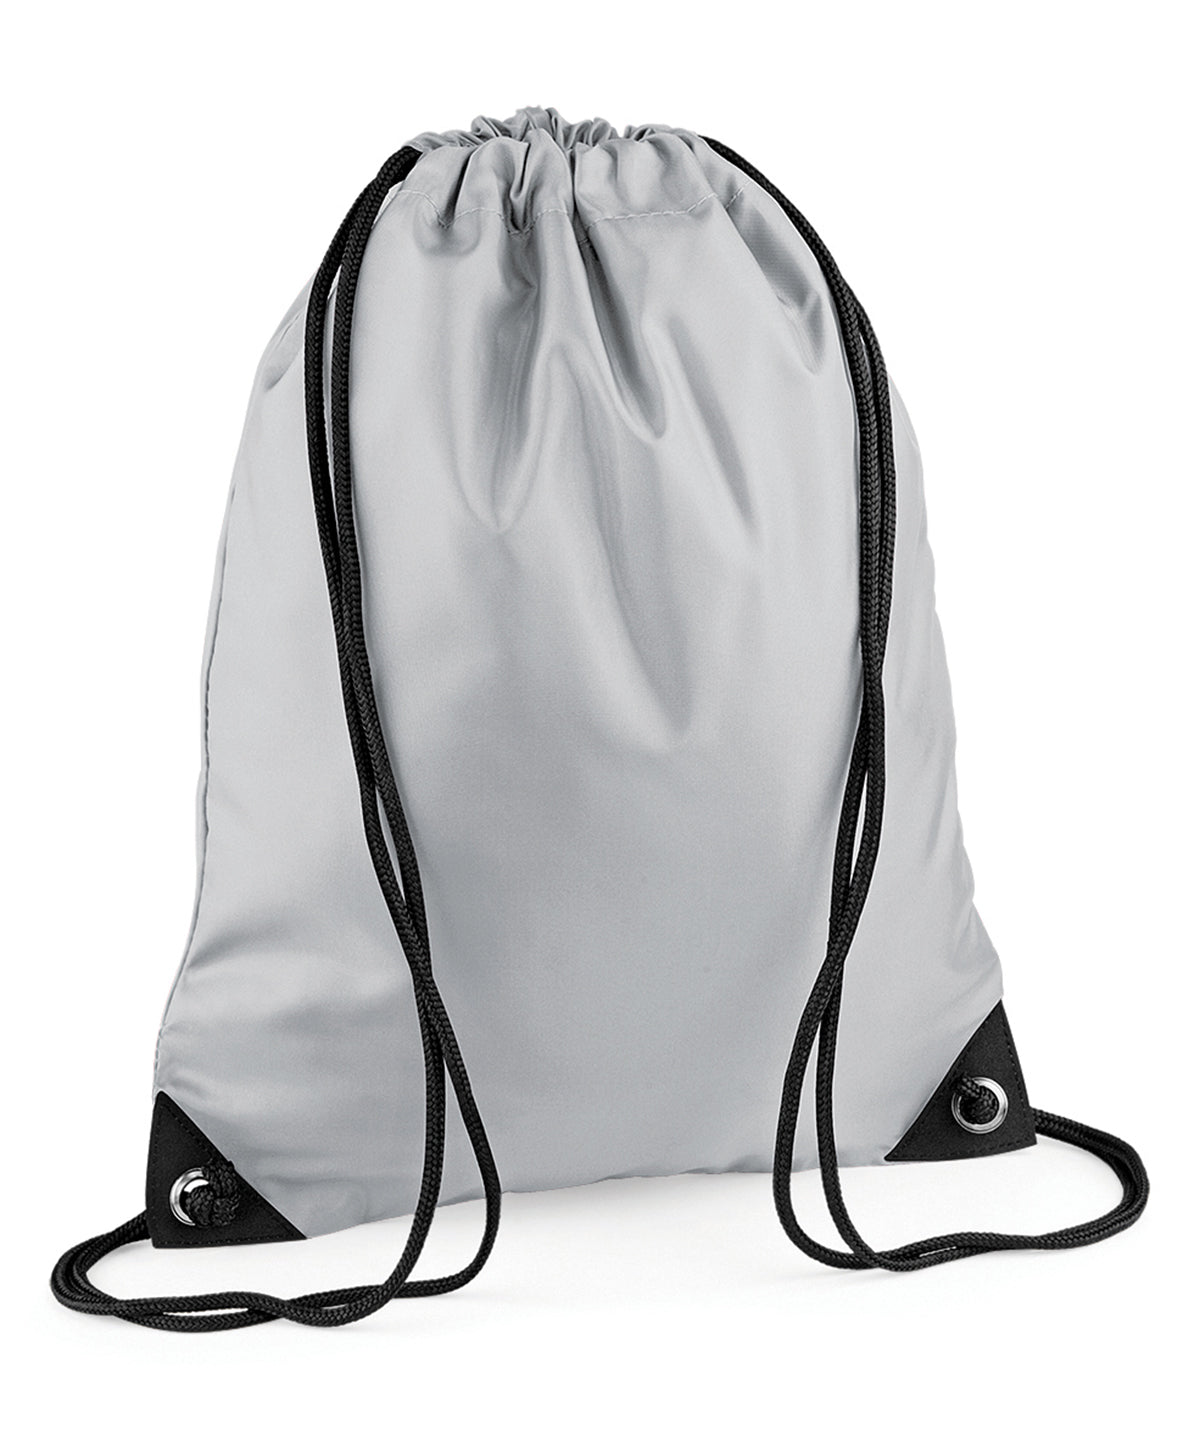 Personalised Bags - Light Grey Bagbase Premium gymsac